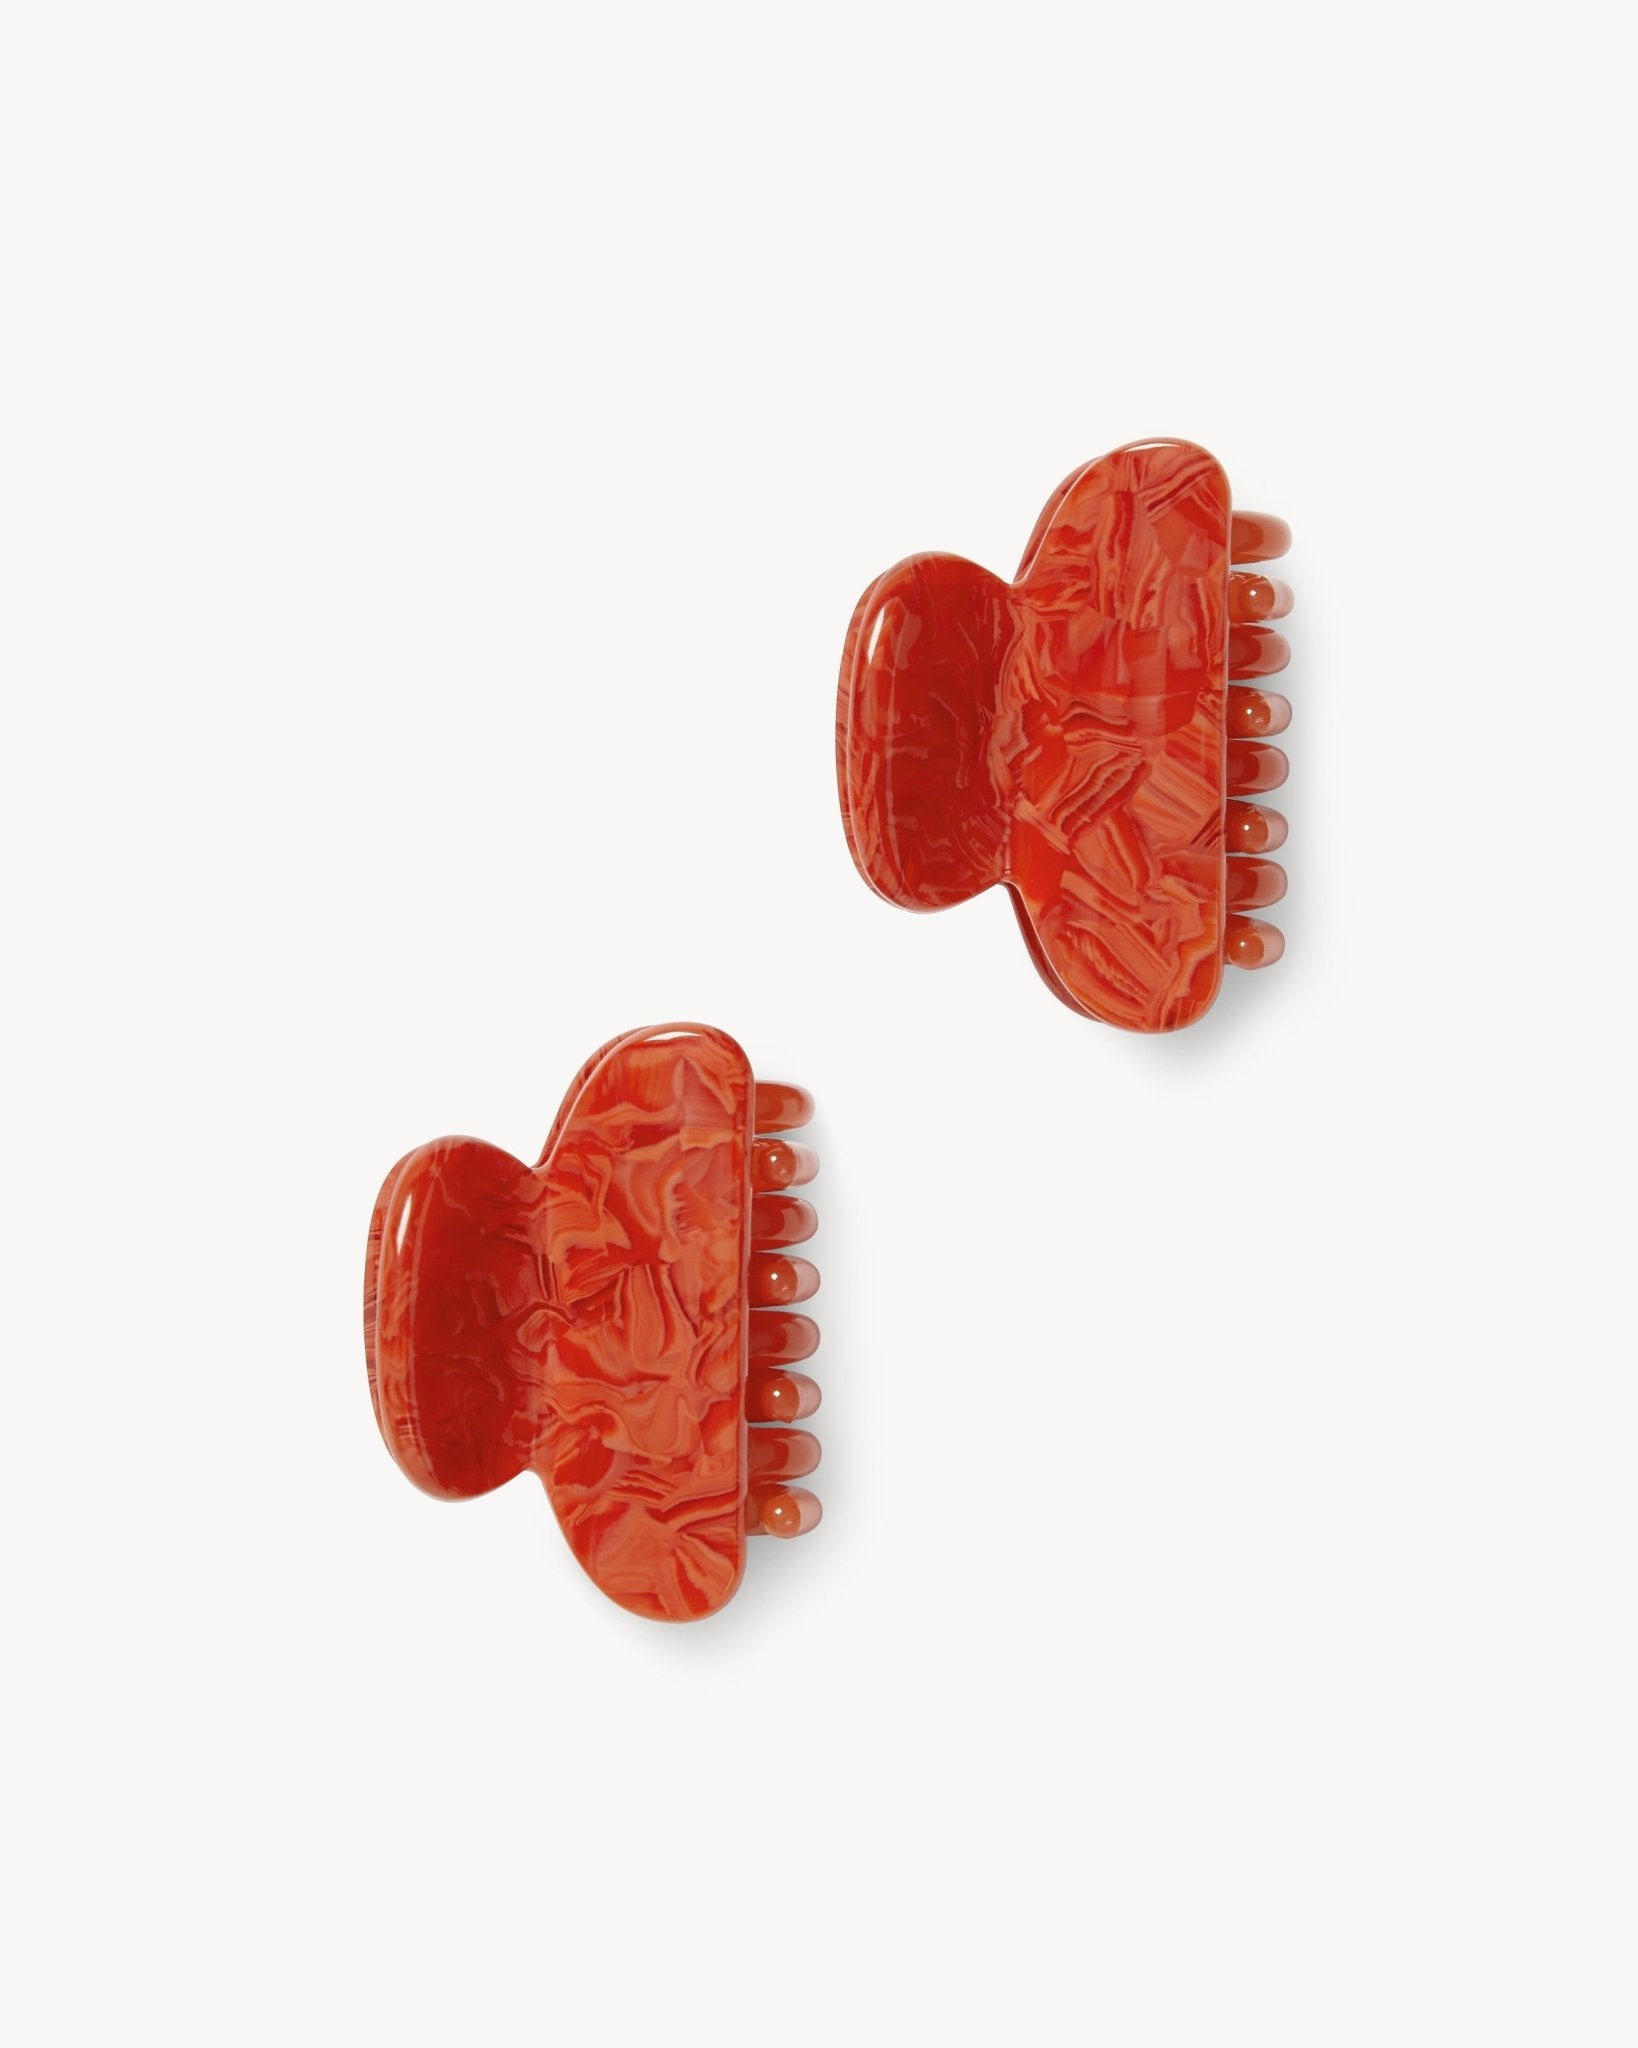 Twin Heirloom Claws in Poppy - MACHETE